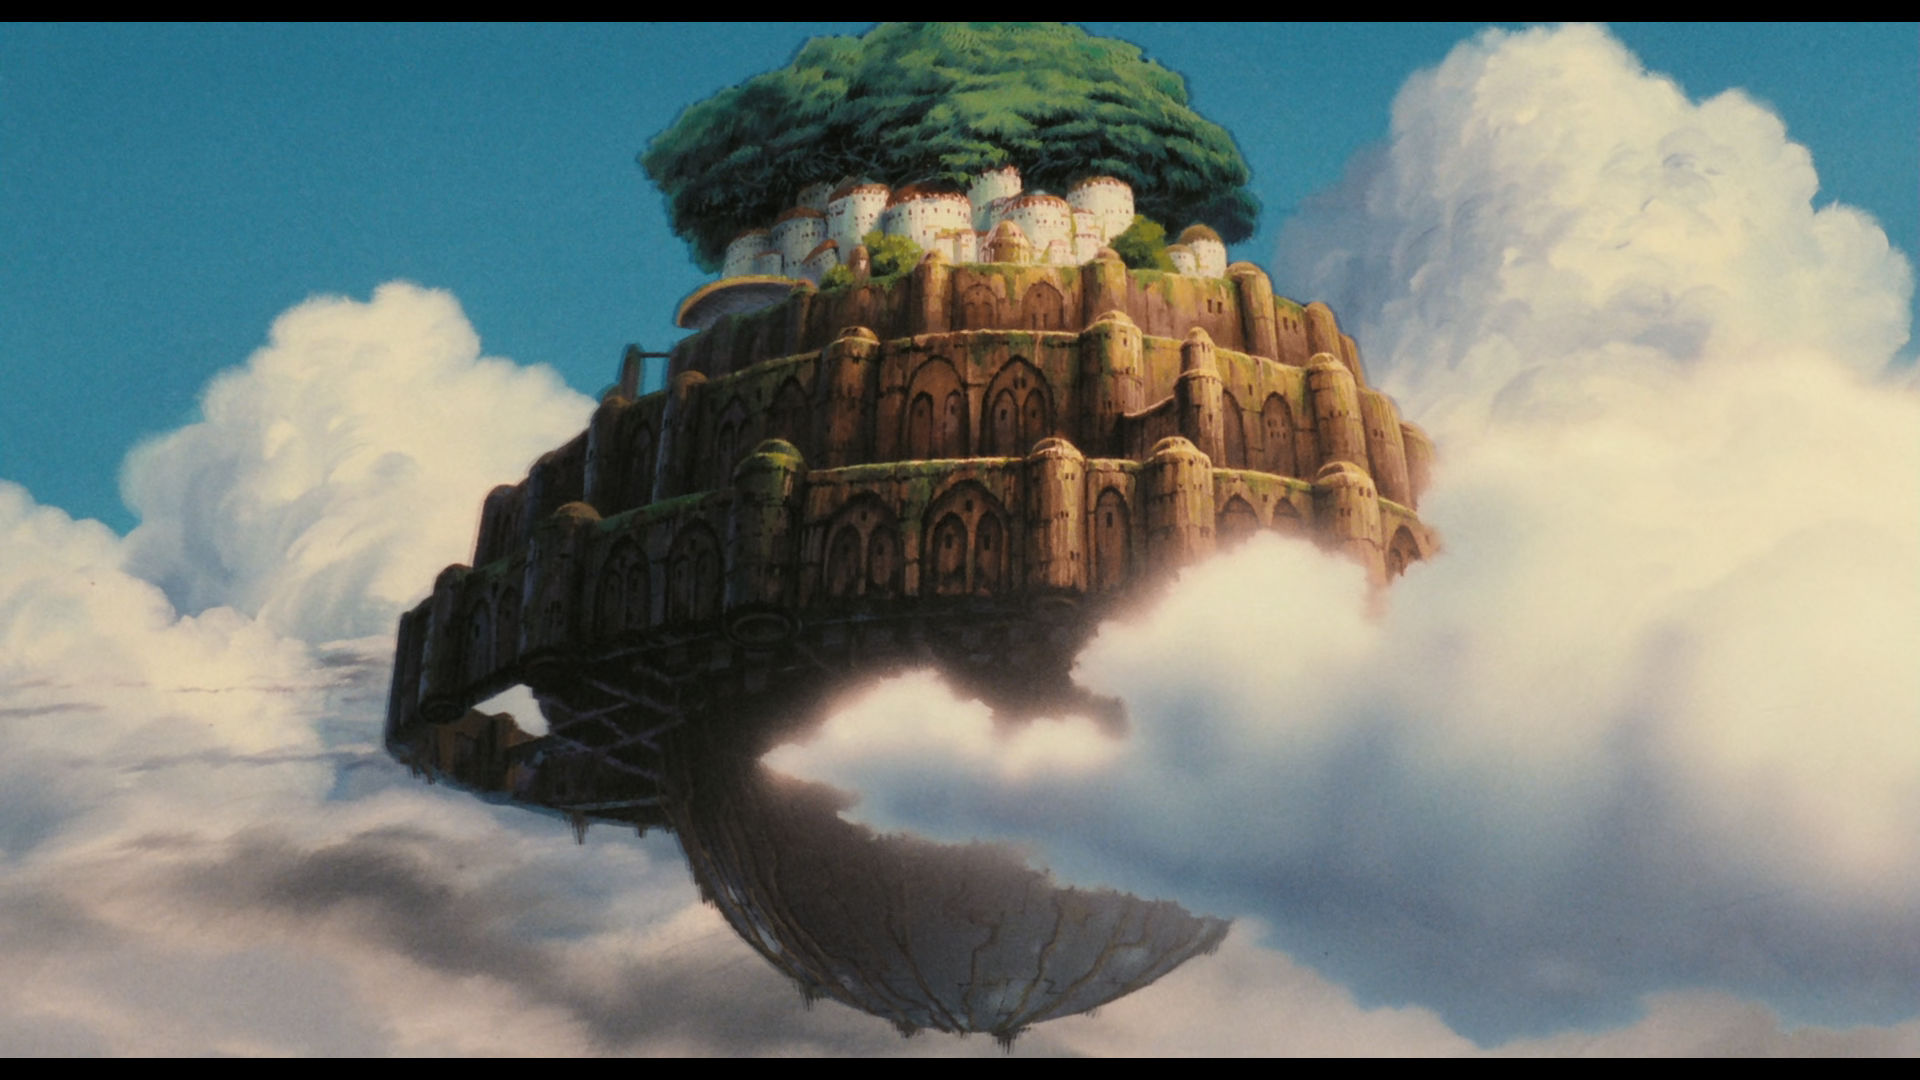 宫崎骏经典动画电影《天空之城》6 月 1 日国内上映,你哪些期待和